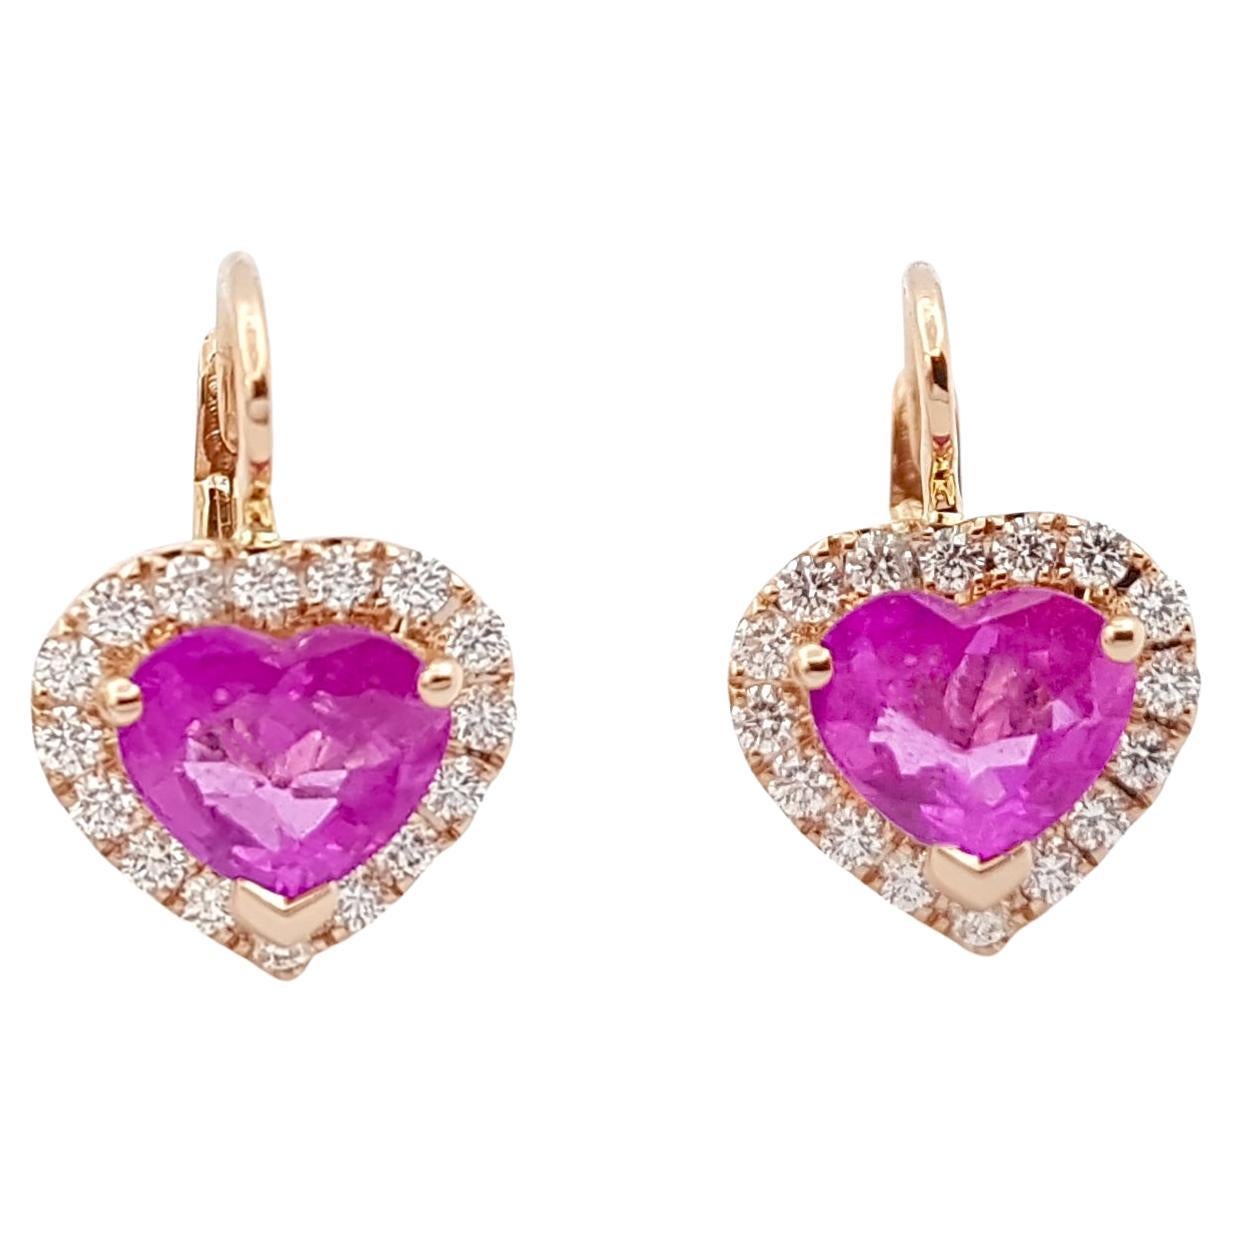 Boucles d'oreilles en or rose 18 carats serties de saphir rose en forme de cœur et de diamants